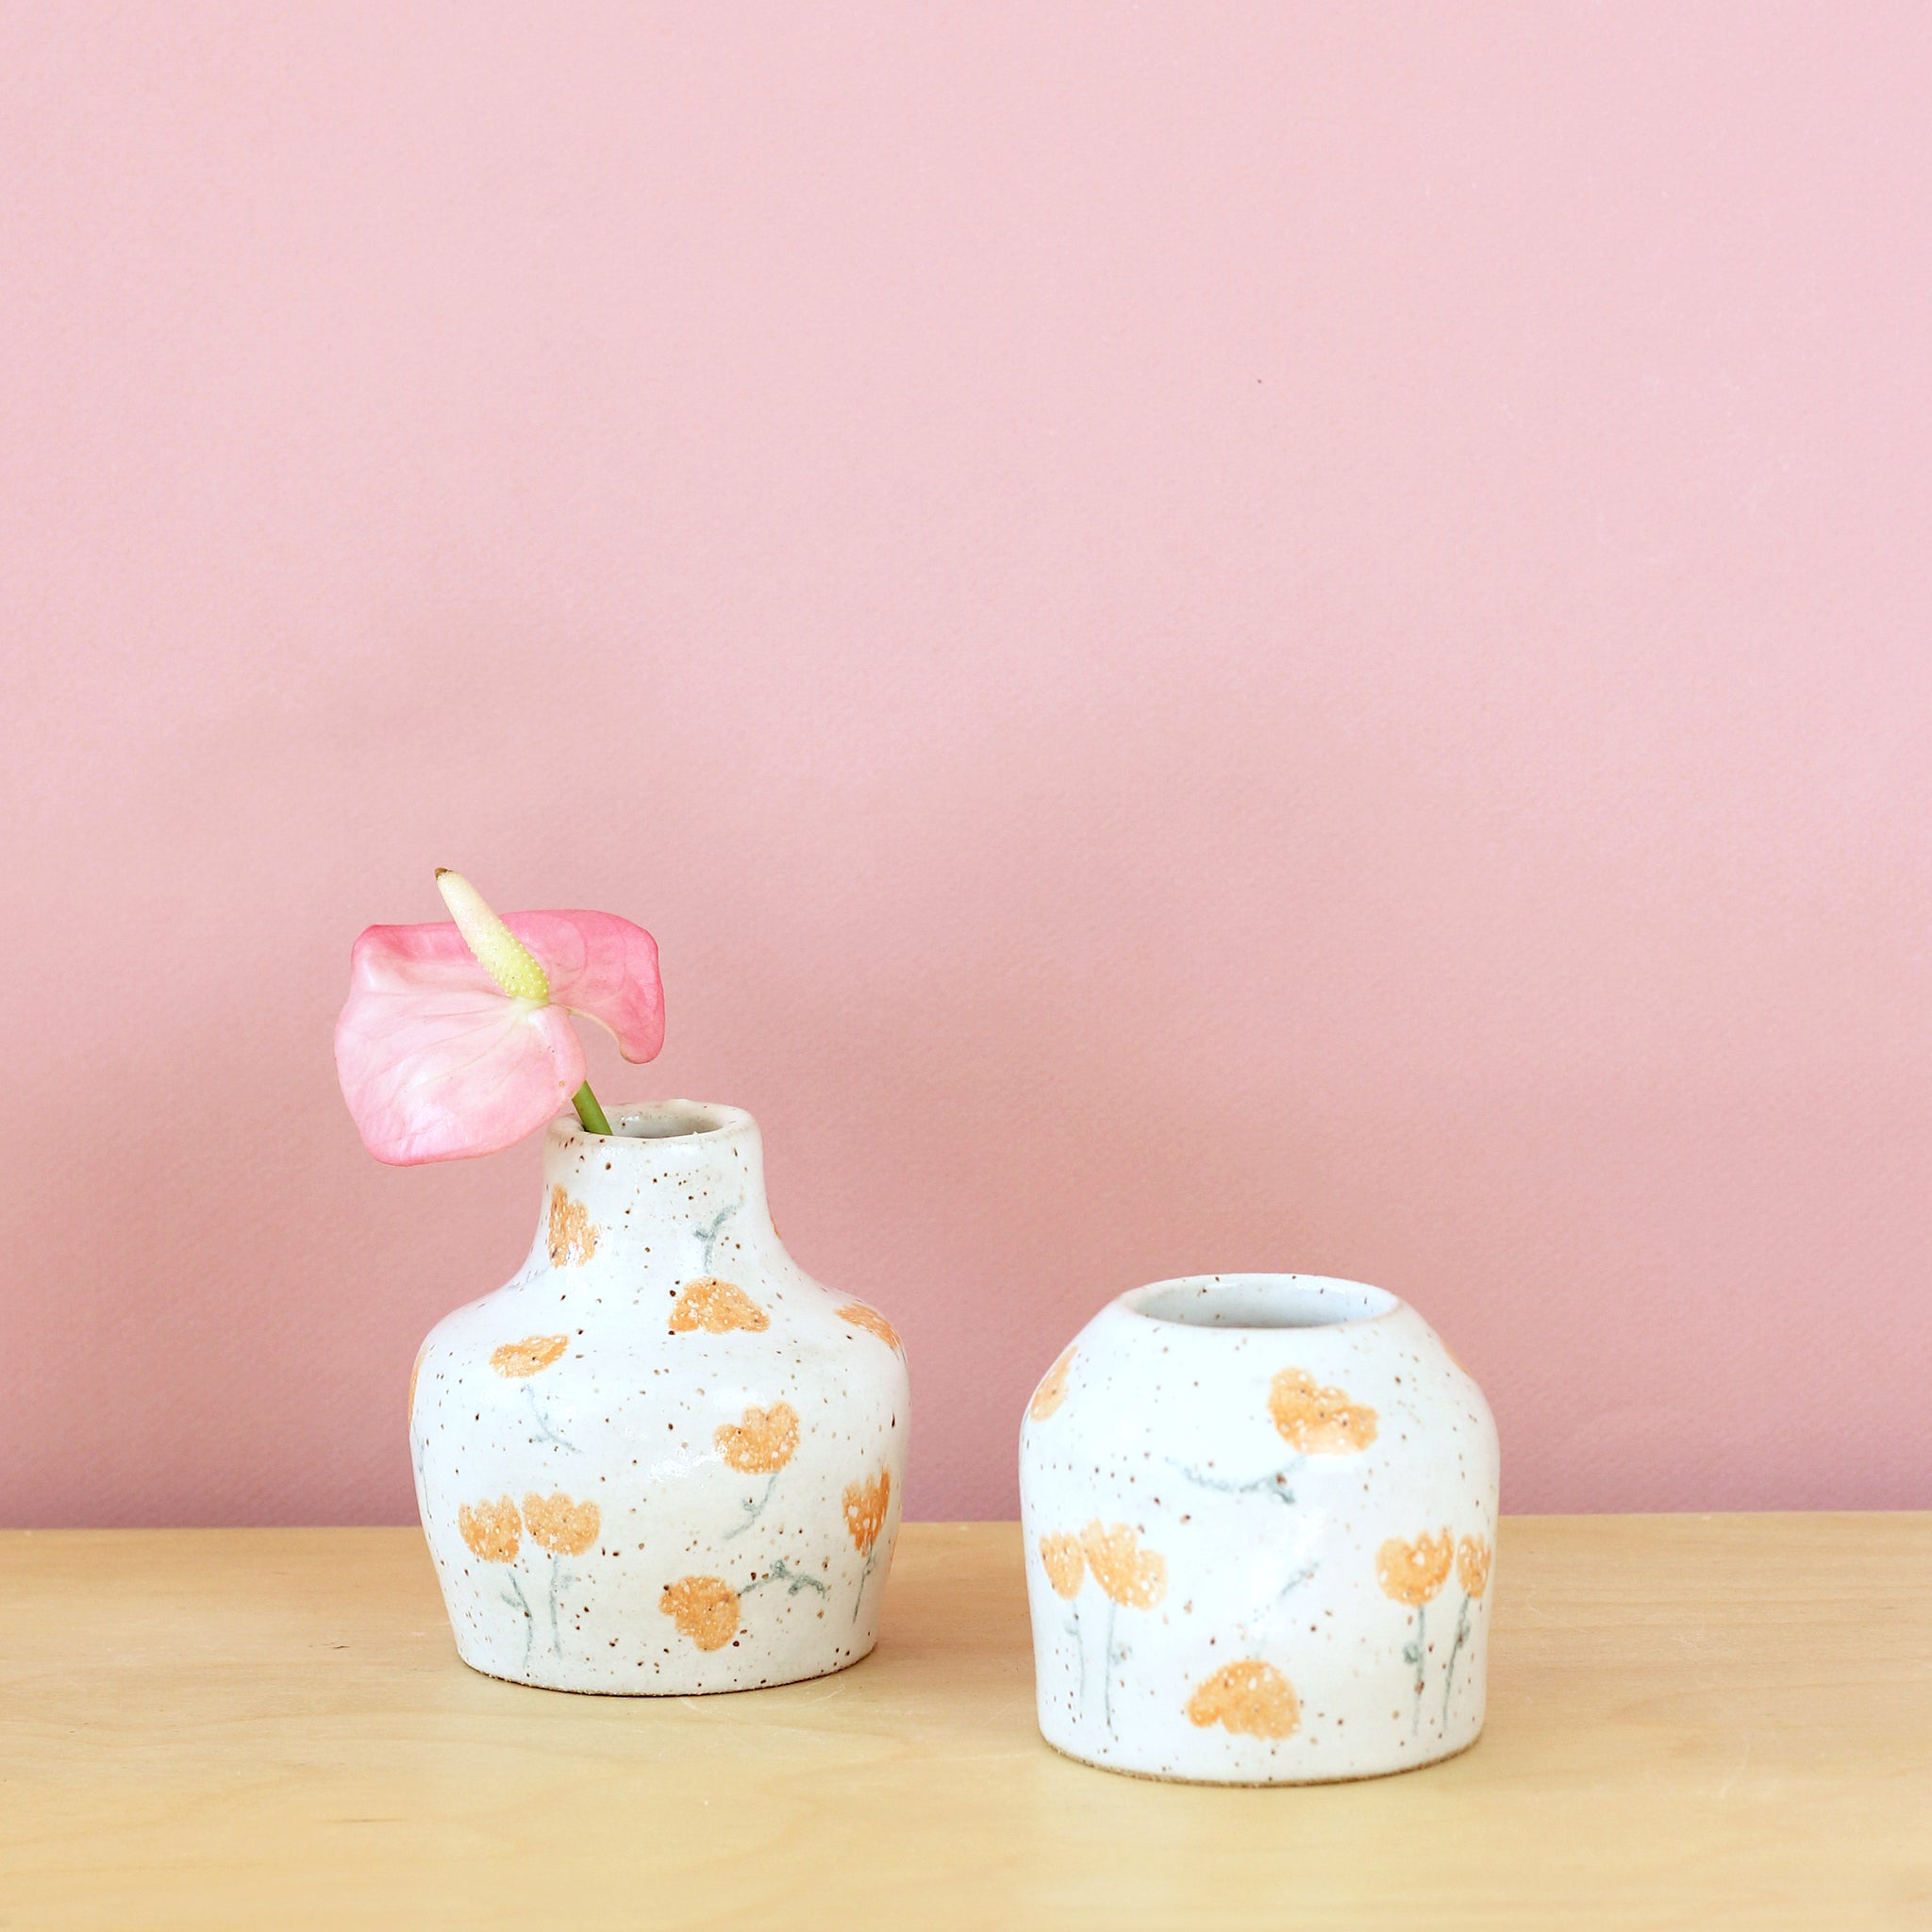 Glazed Stoneware Bud Vase with Tulip Pattern